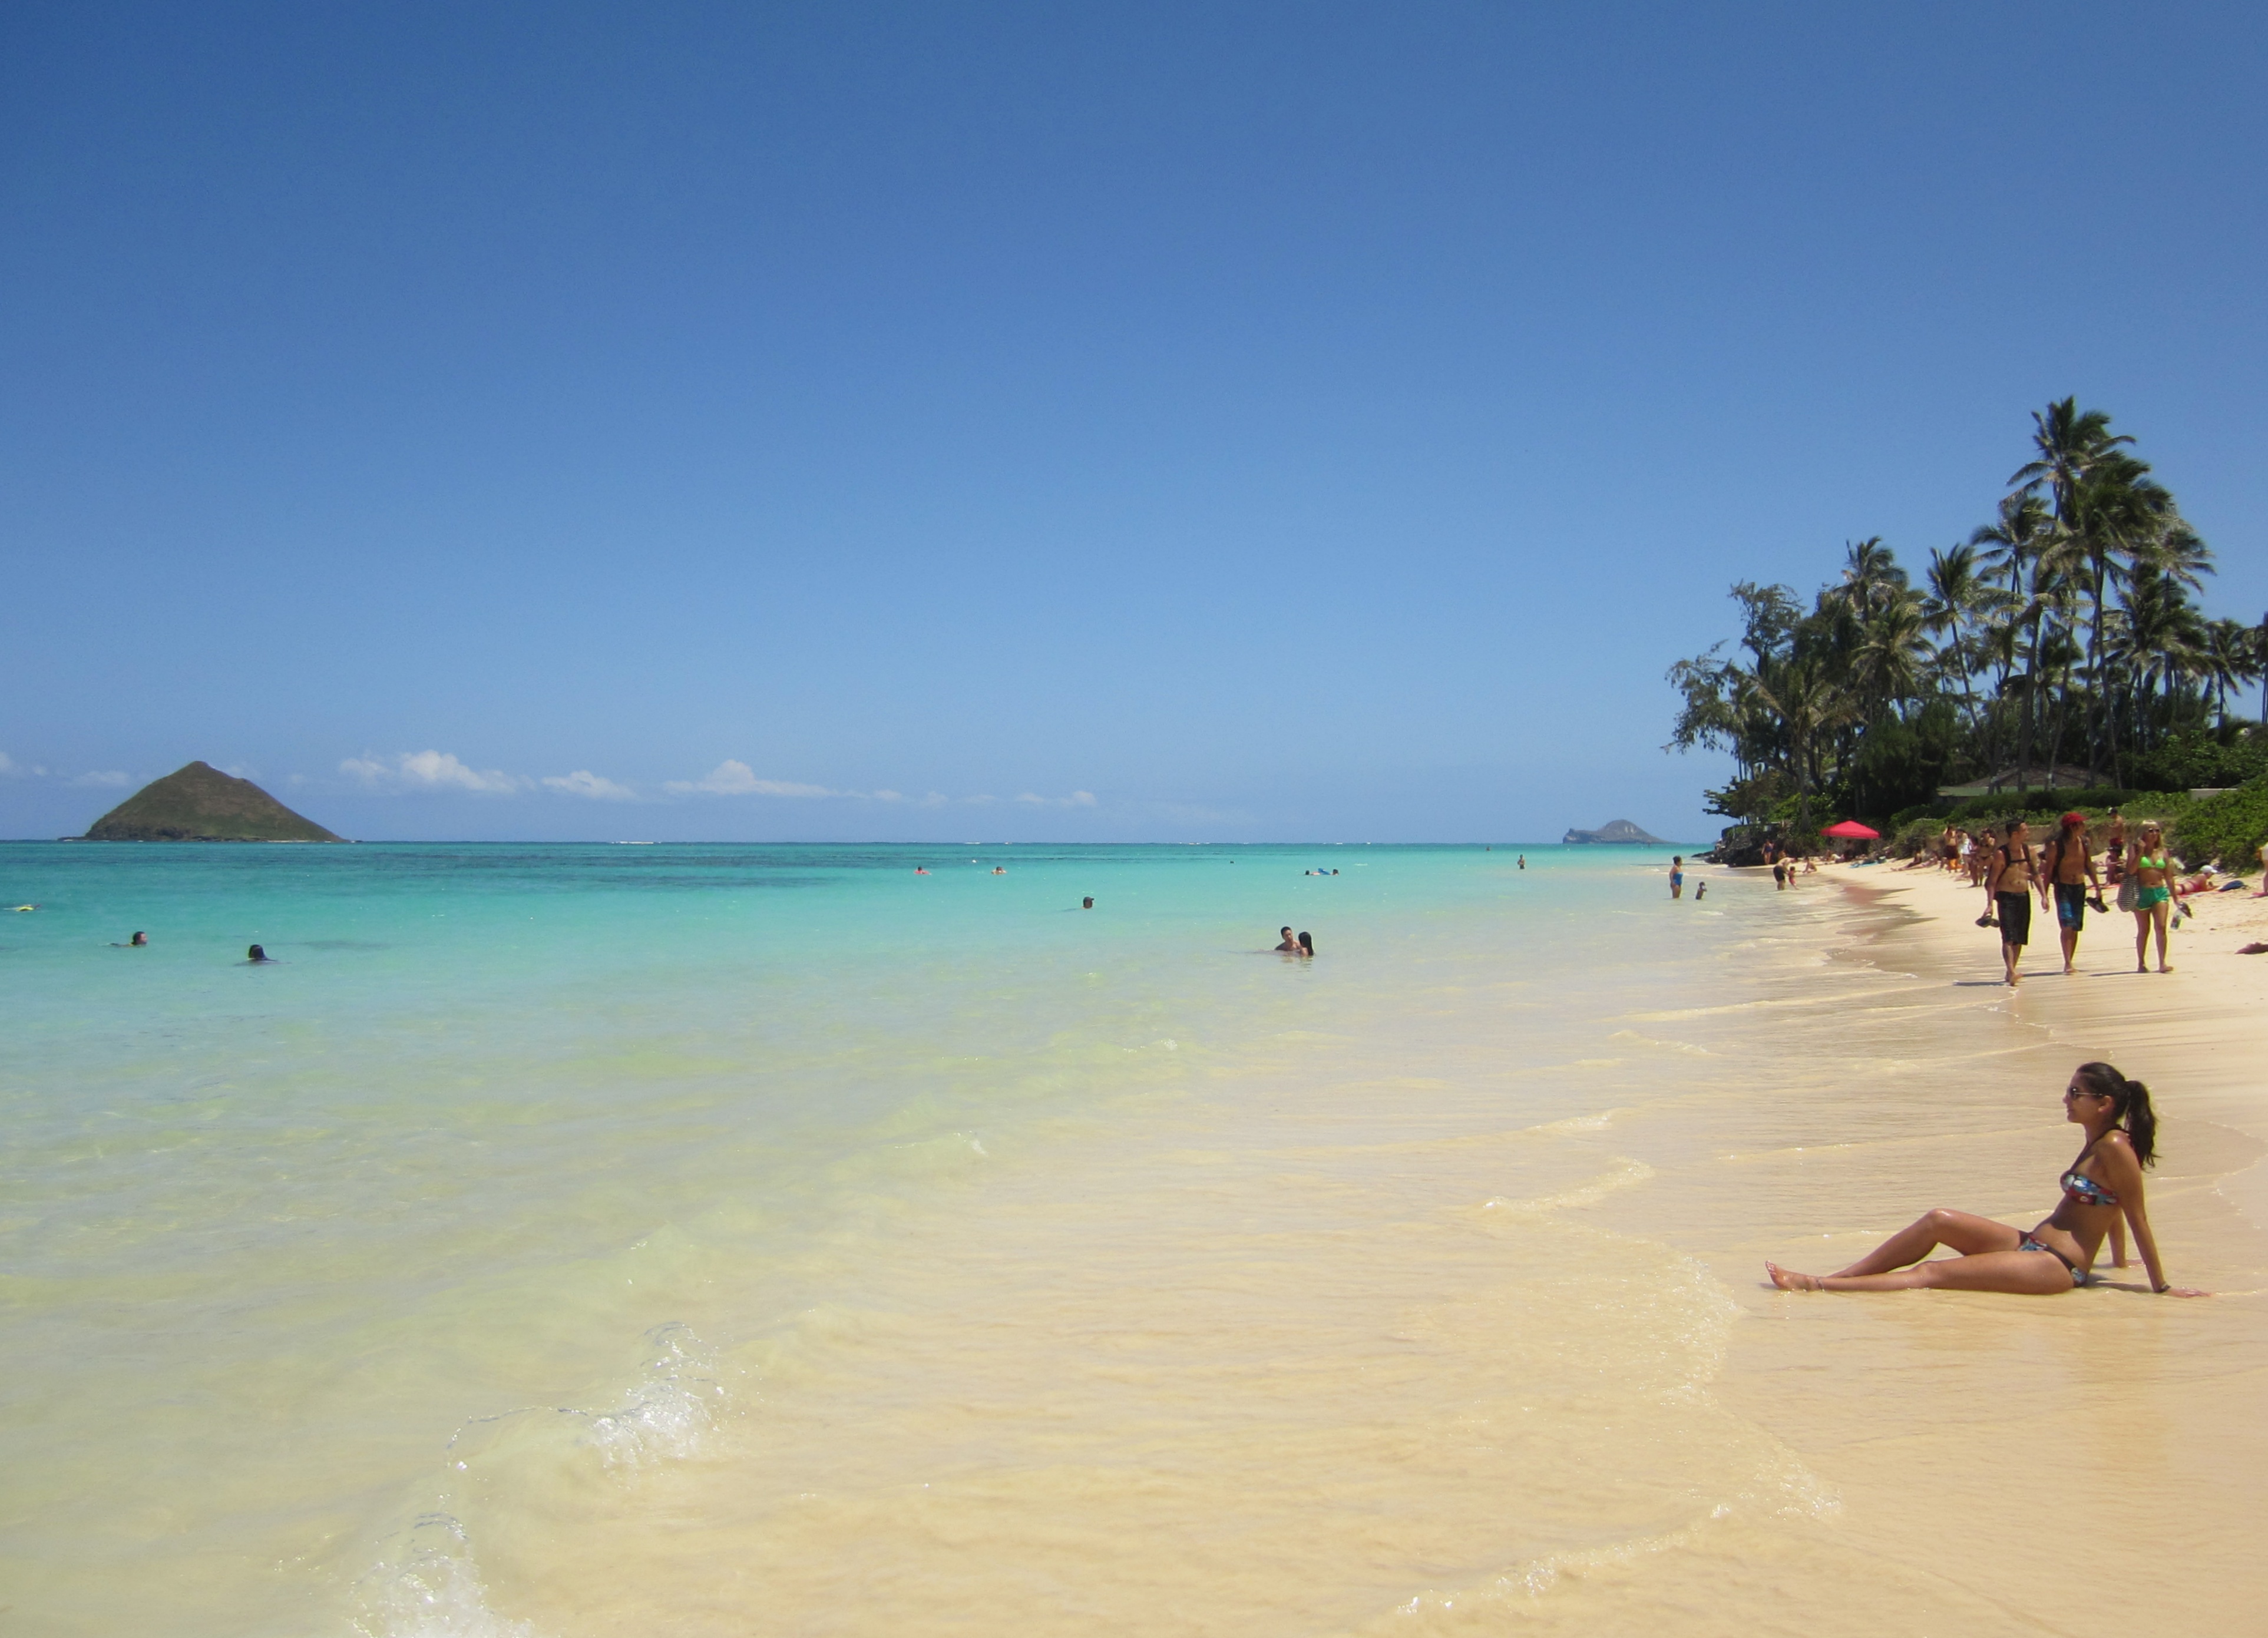 10 Best Beaches In Hawaii Team Surf Peru